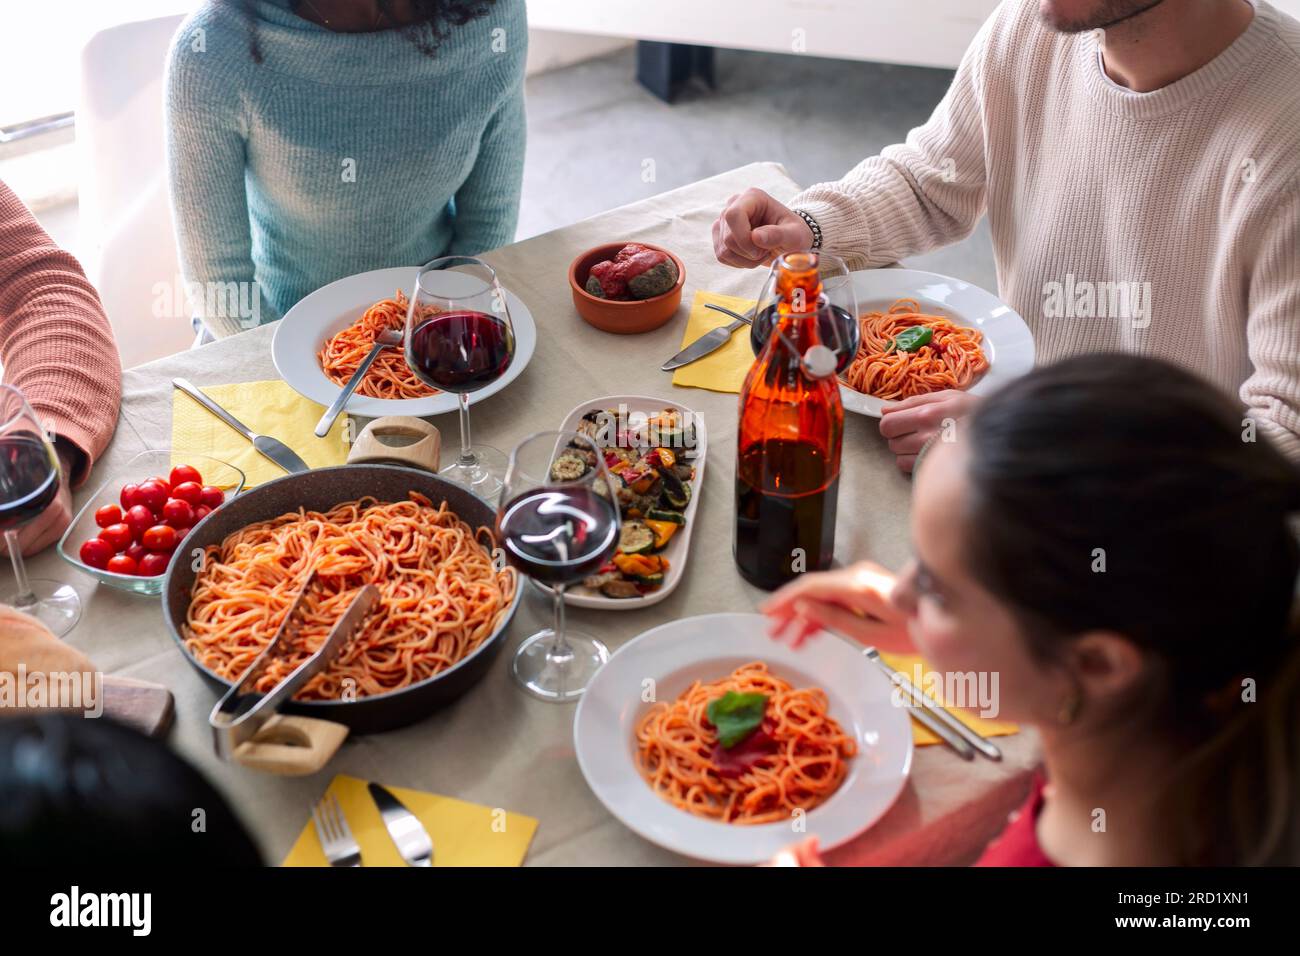 Gros plan de jeunes amis avec des fourchettes debout près de la table servie avec des pâtes maison Banque D'Images